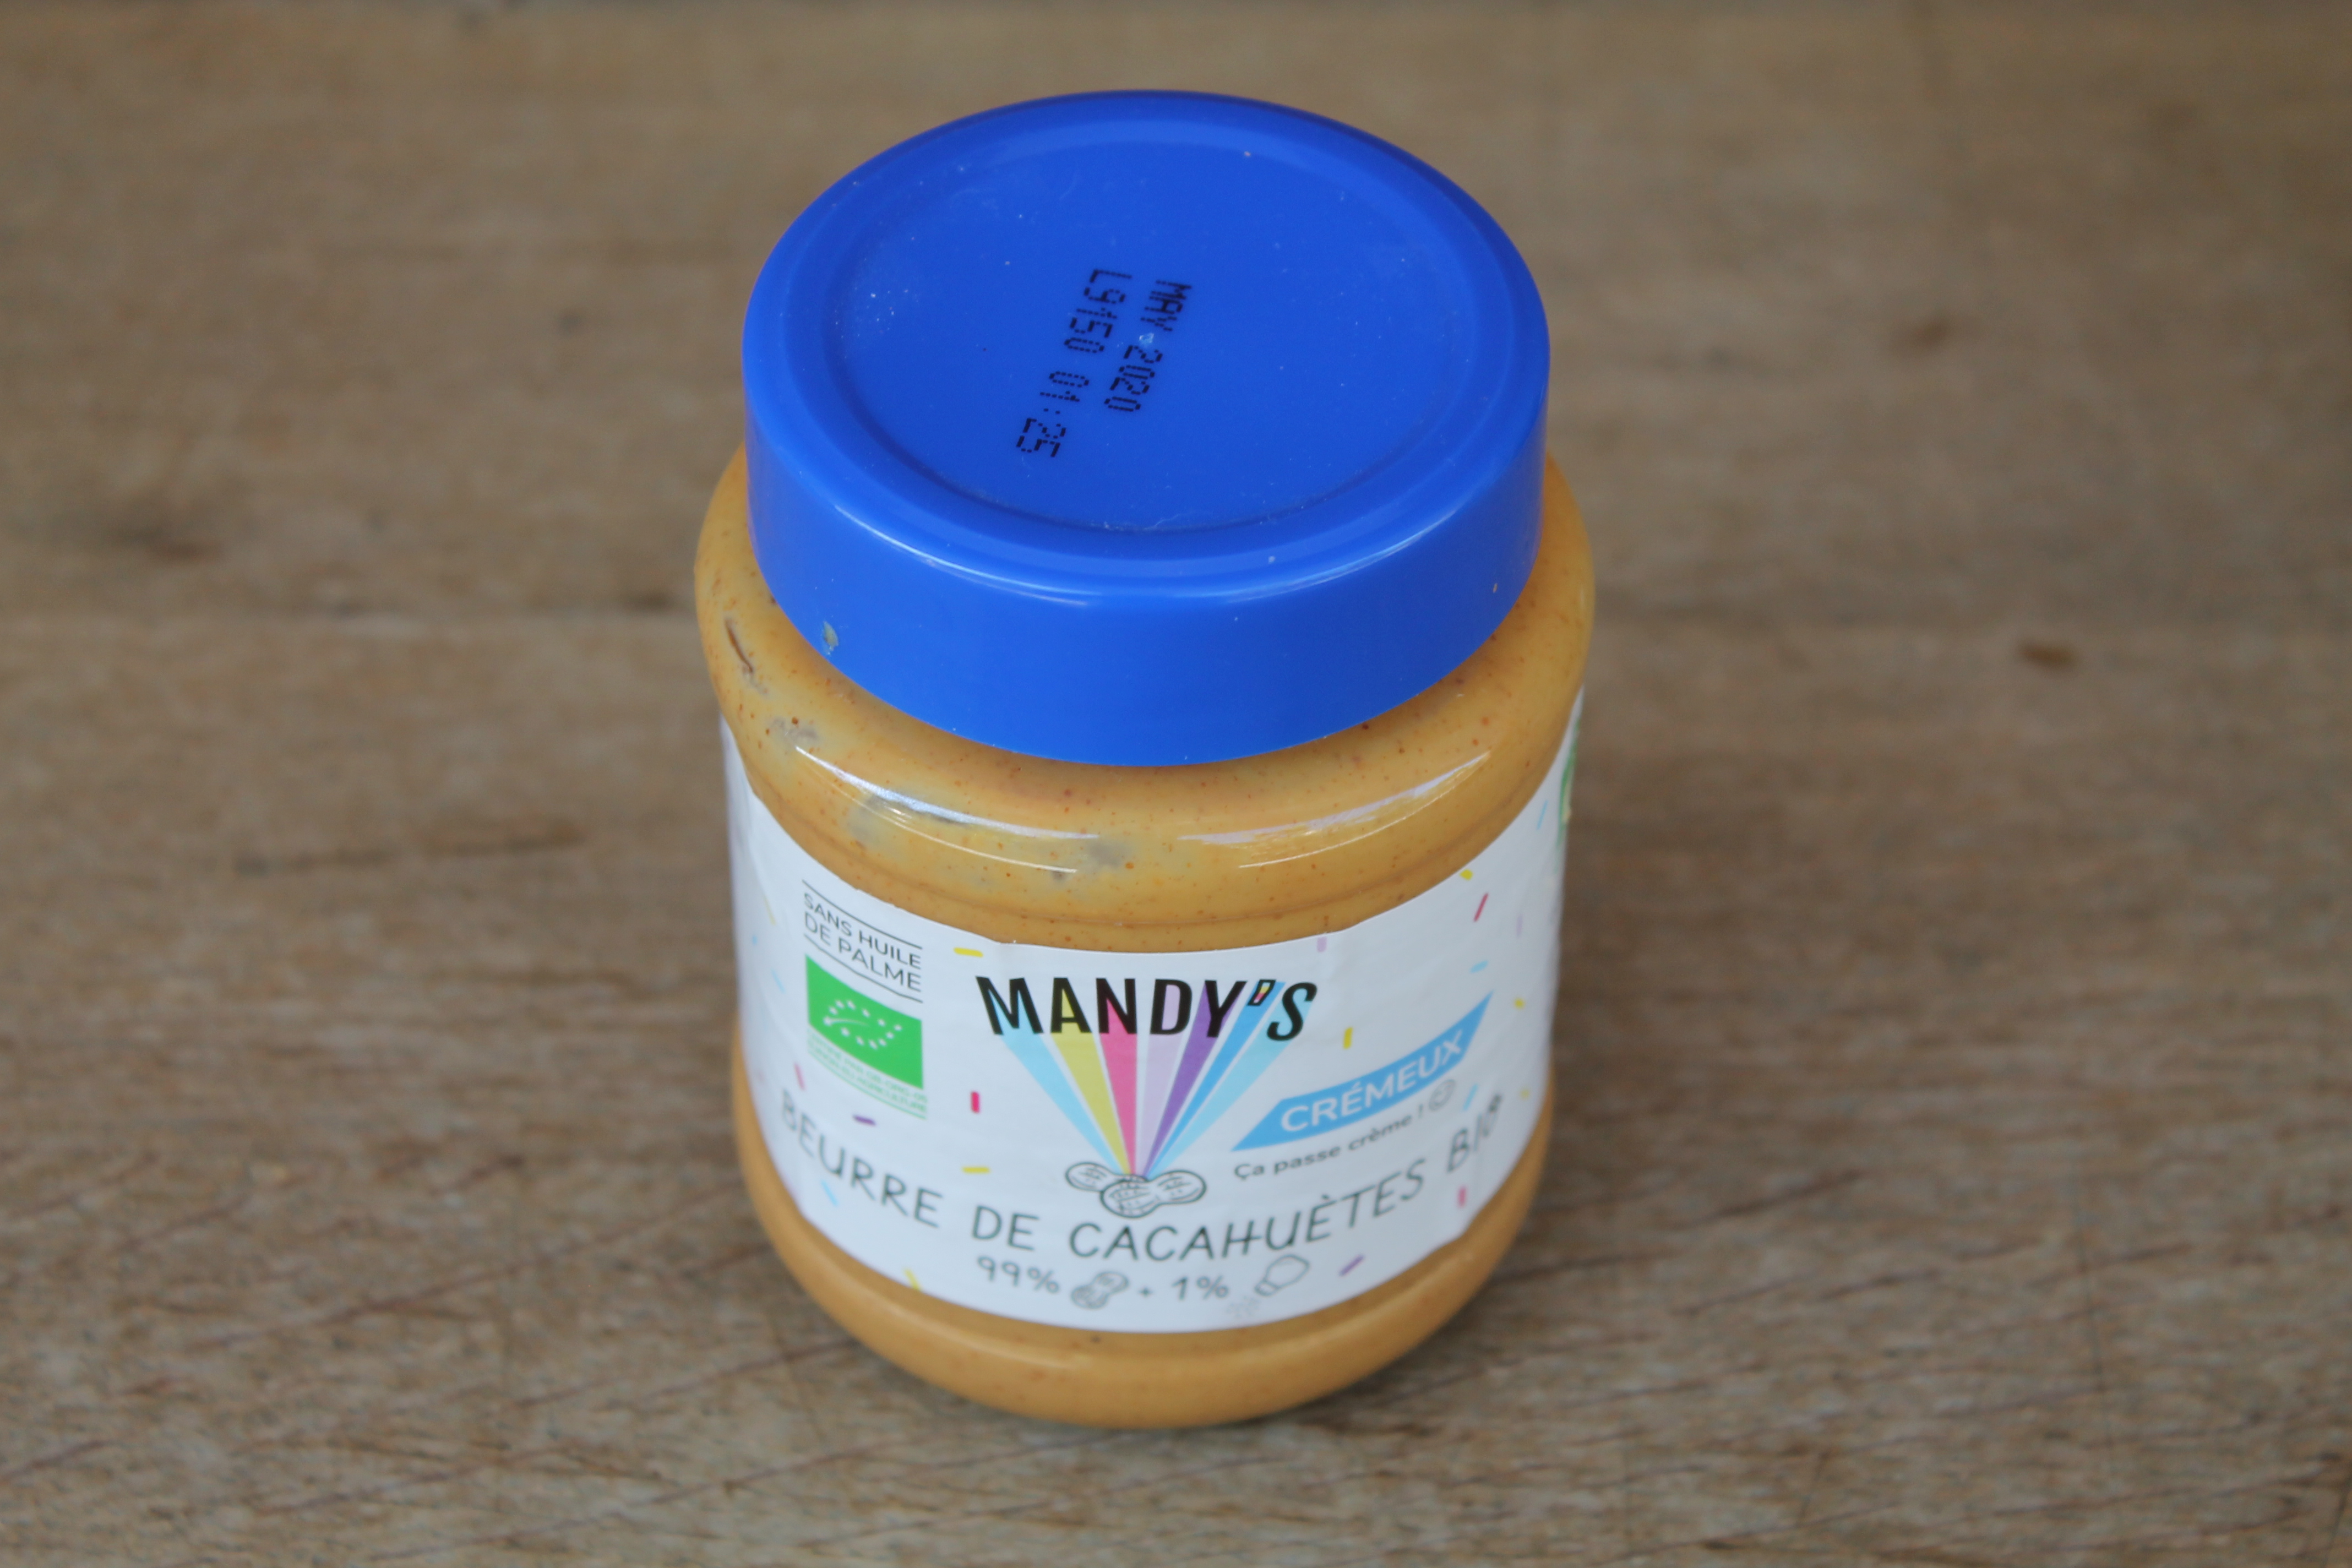 MANDY'S - Beurre de cacahuète crémeux bio